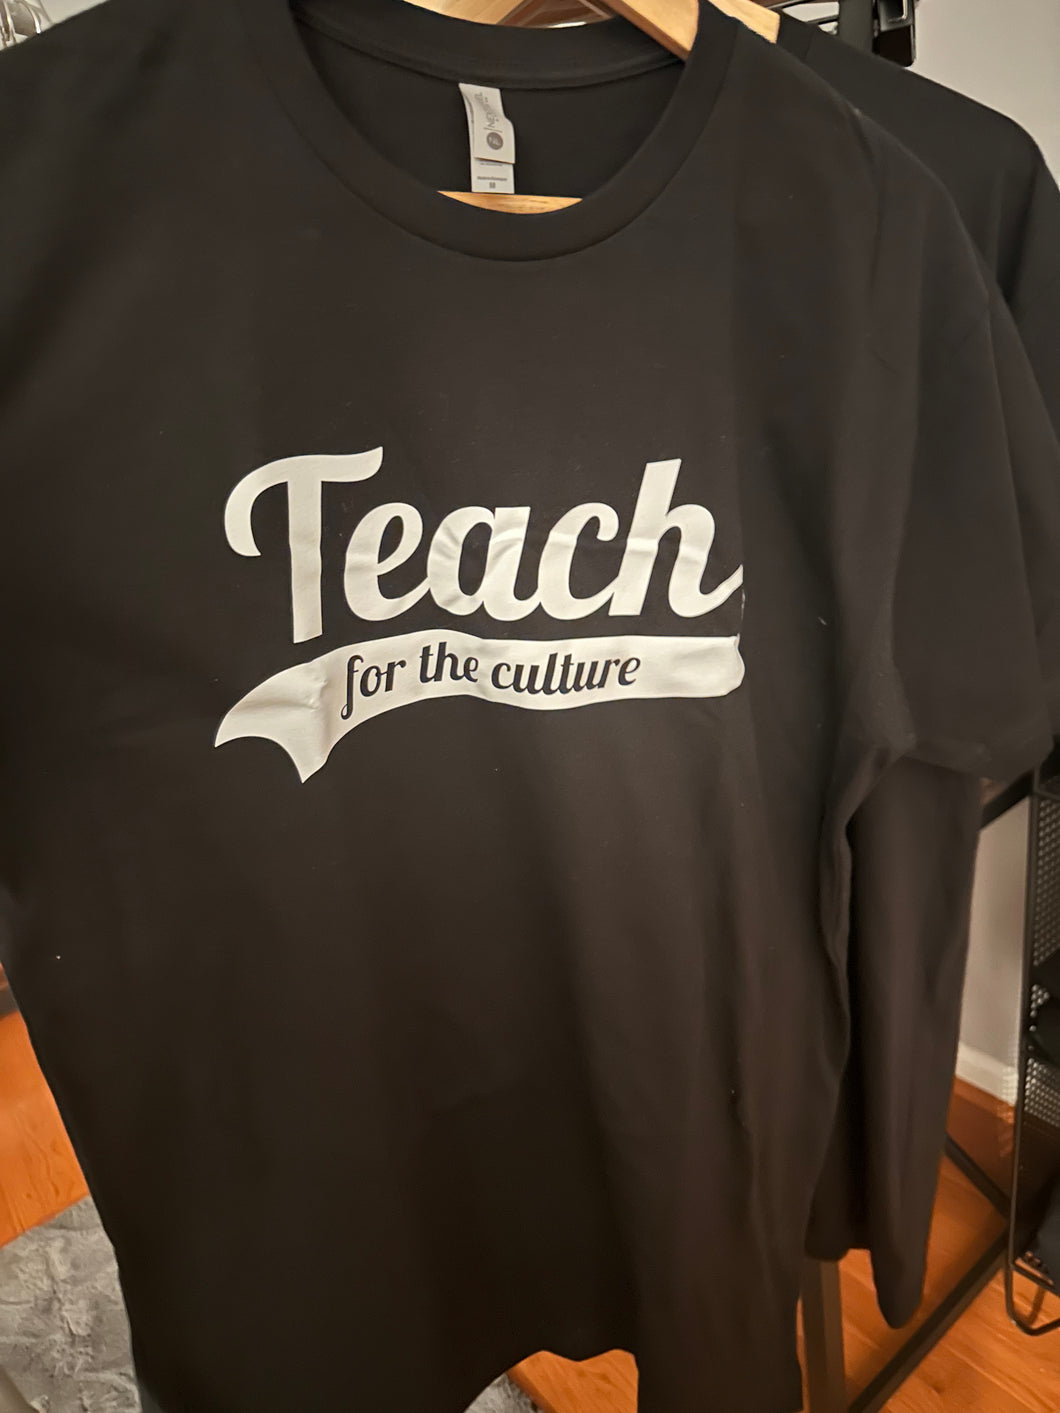 Team font - “Teach for the Culture” tee